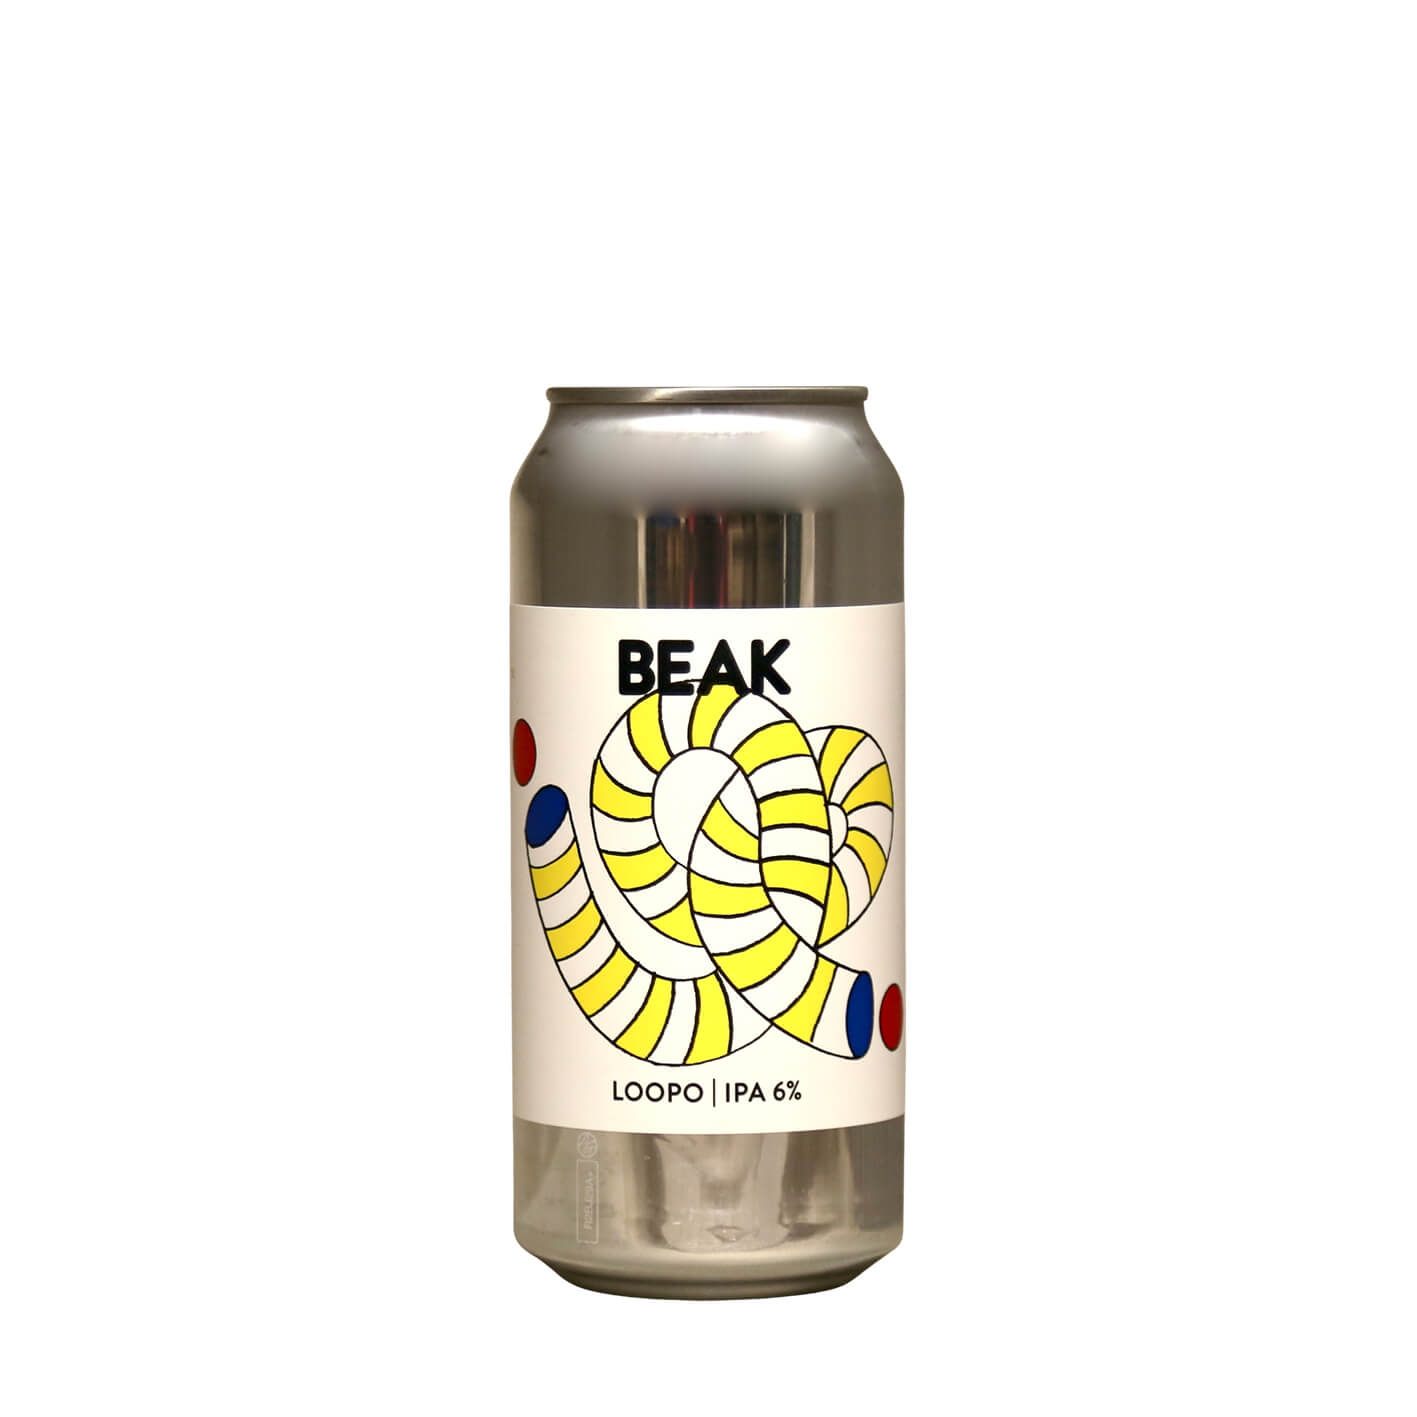 Beak Brewery - Loopo IPA | Buy Online